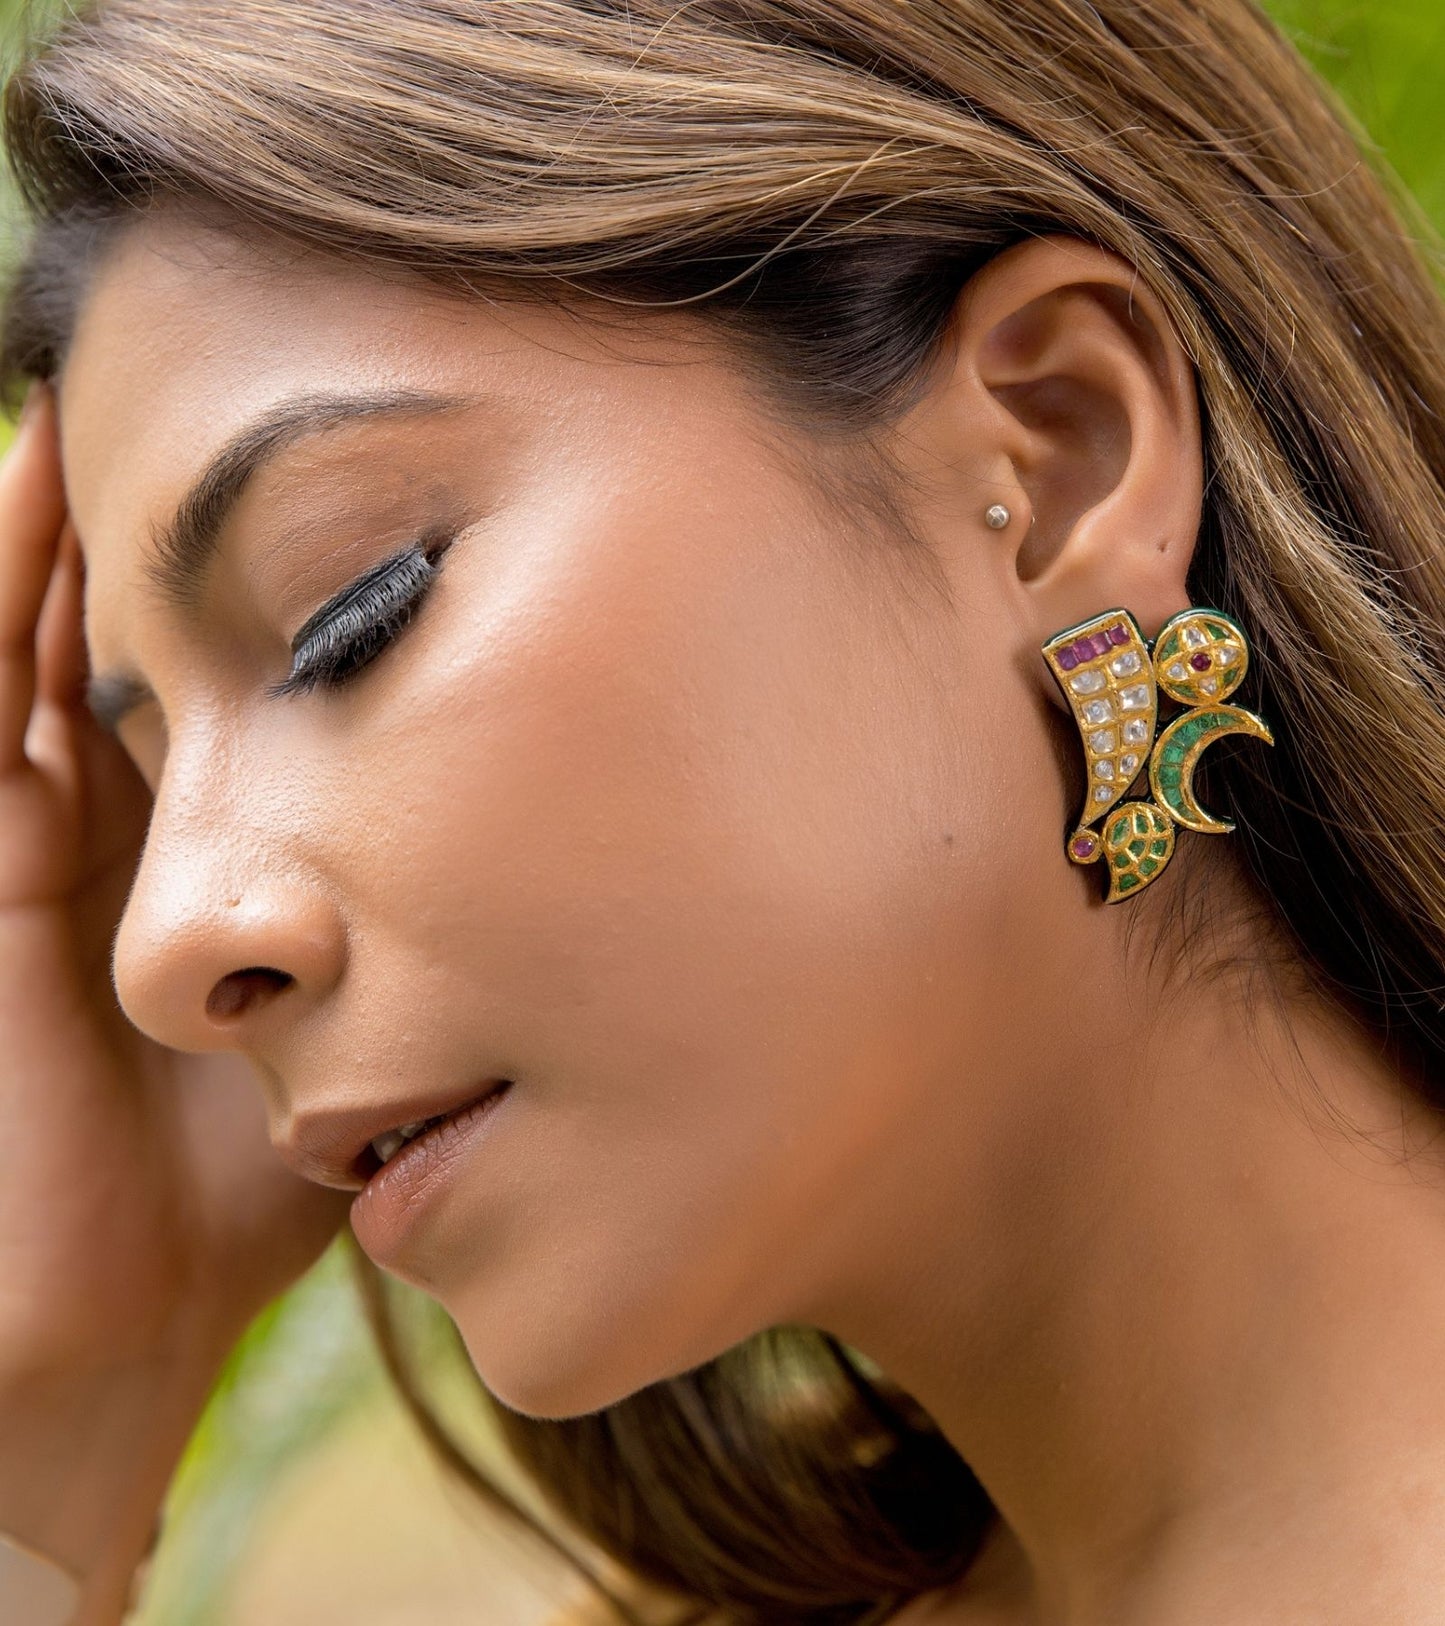 The Samara Polki Earrings in Gold-Festive Jewelry